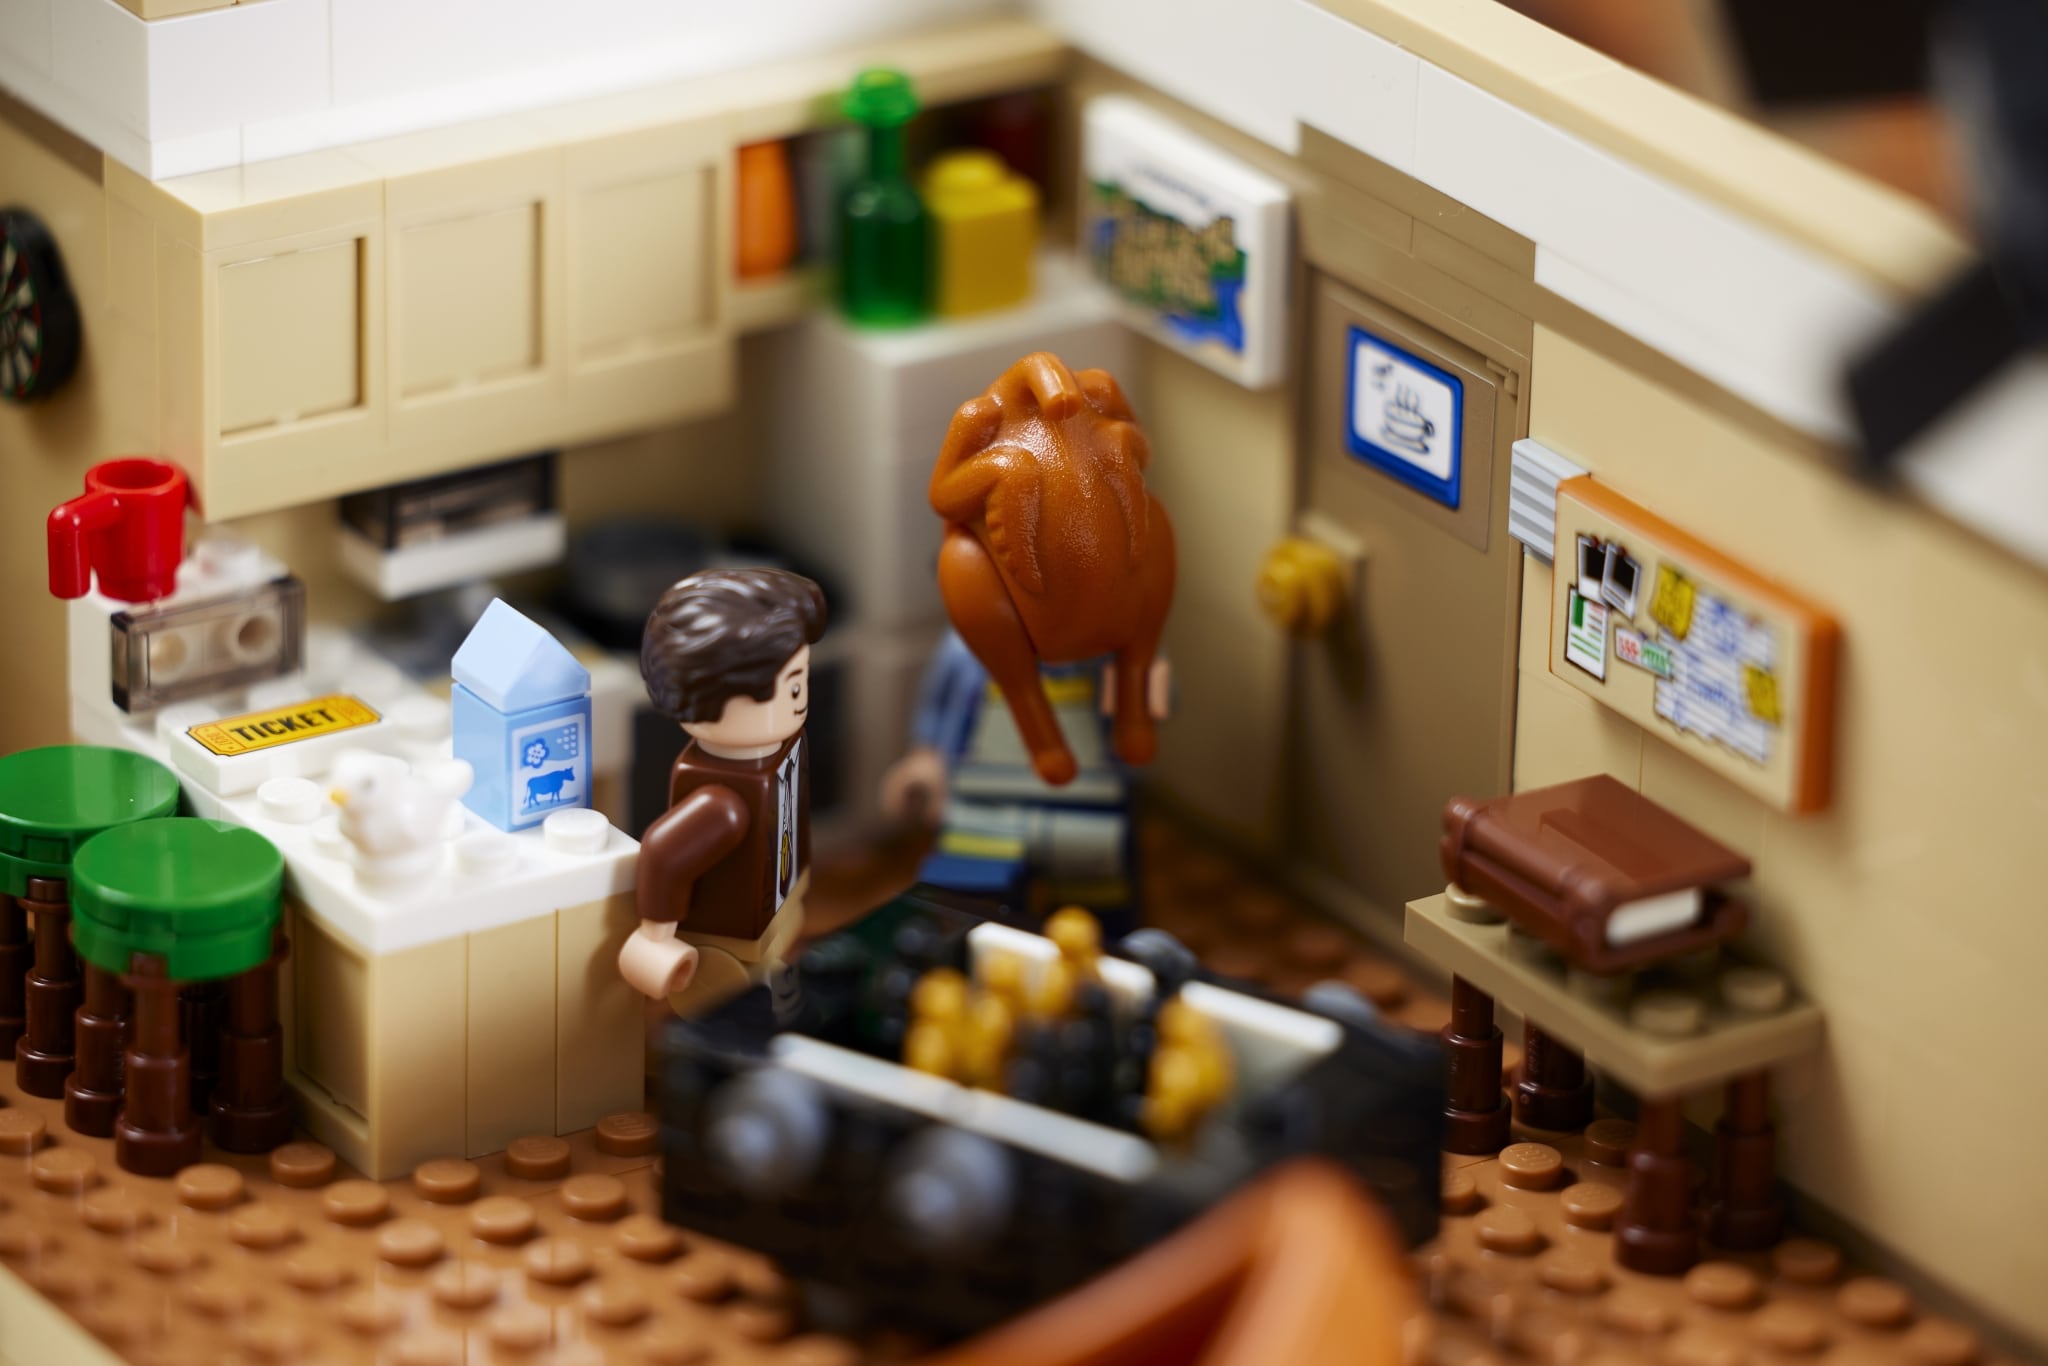 Set de LEGO inspiré de la série Friends